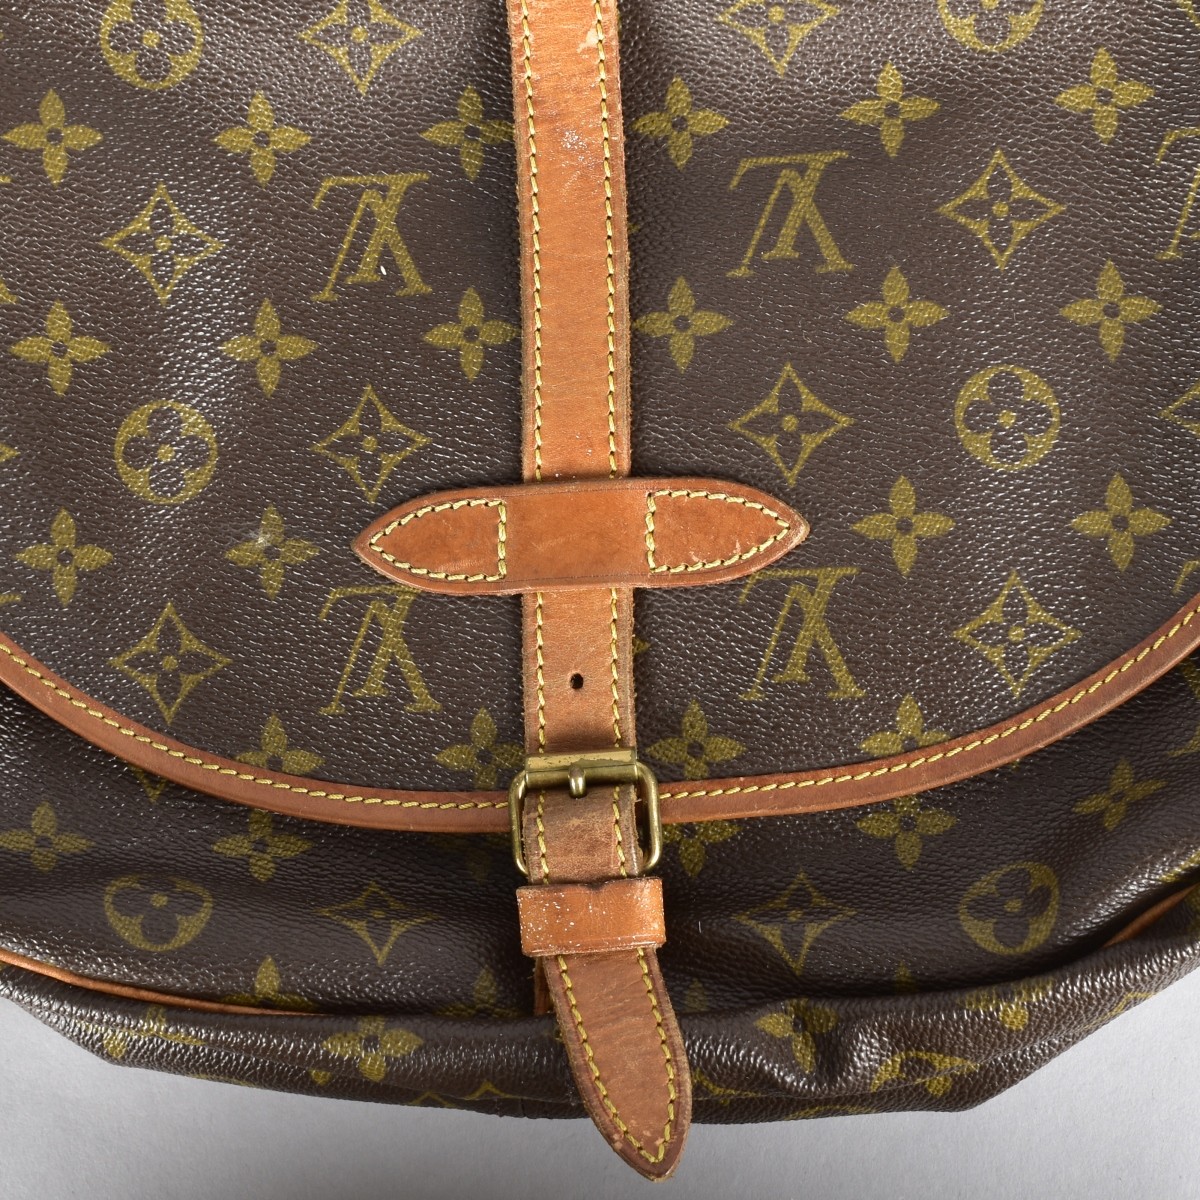 Louis Vuitton Saumur Crossbody Bag